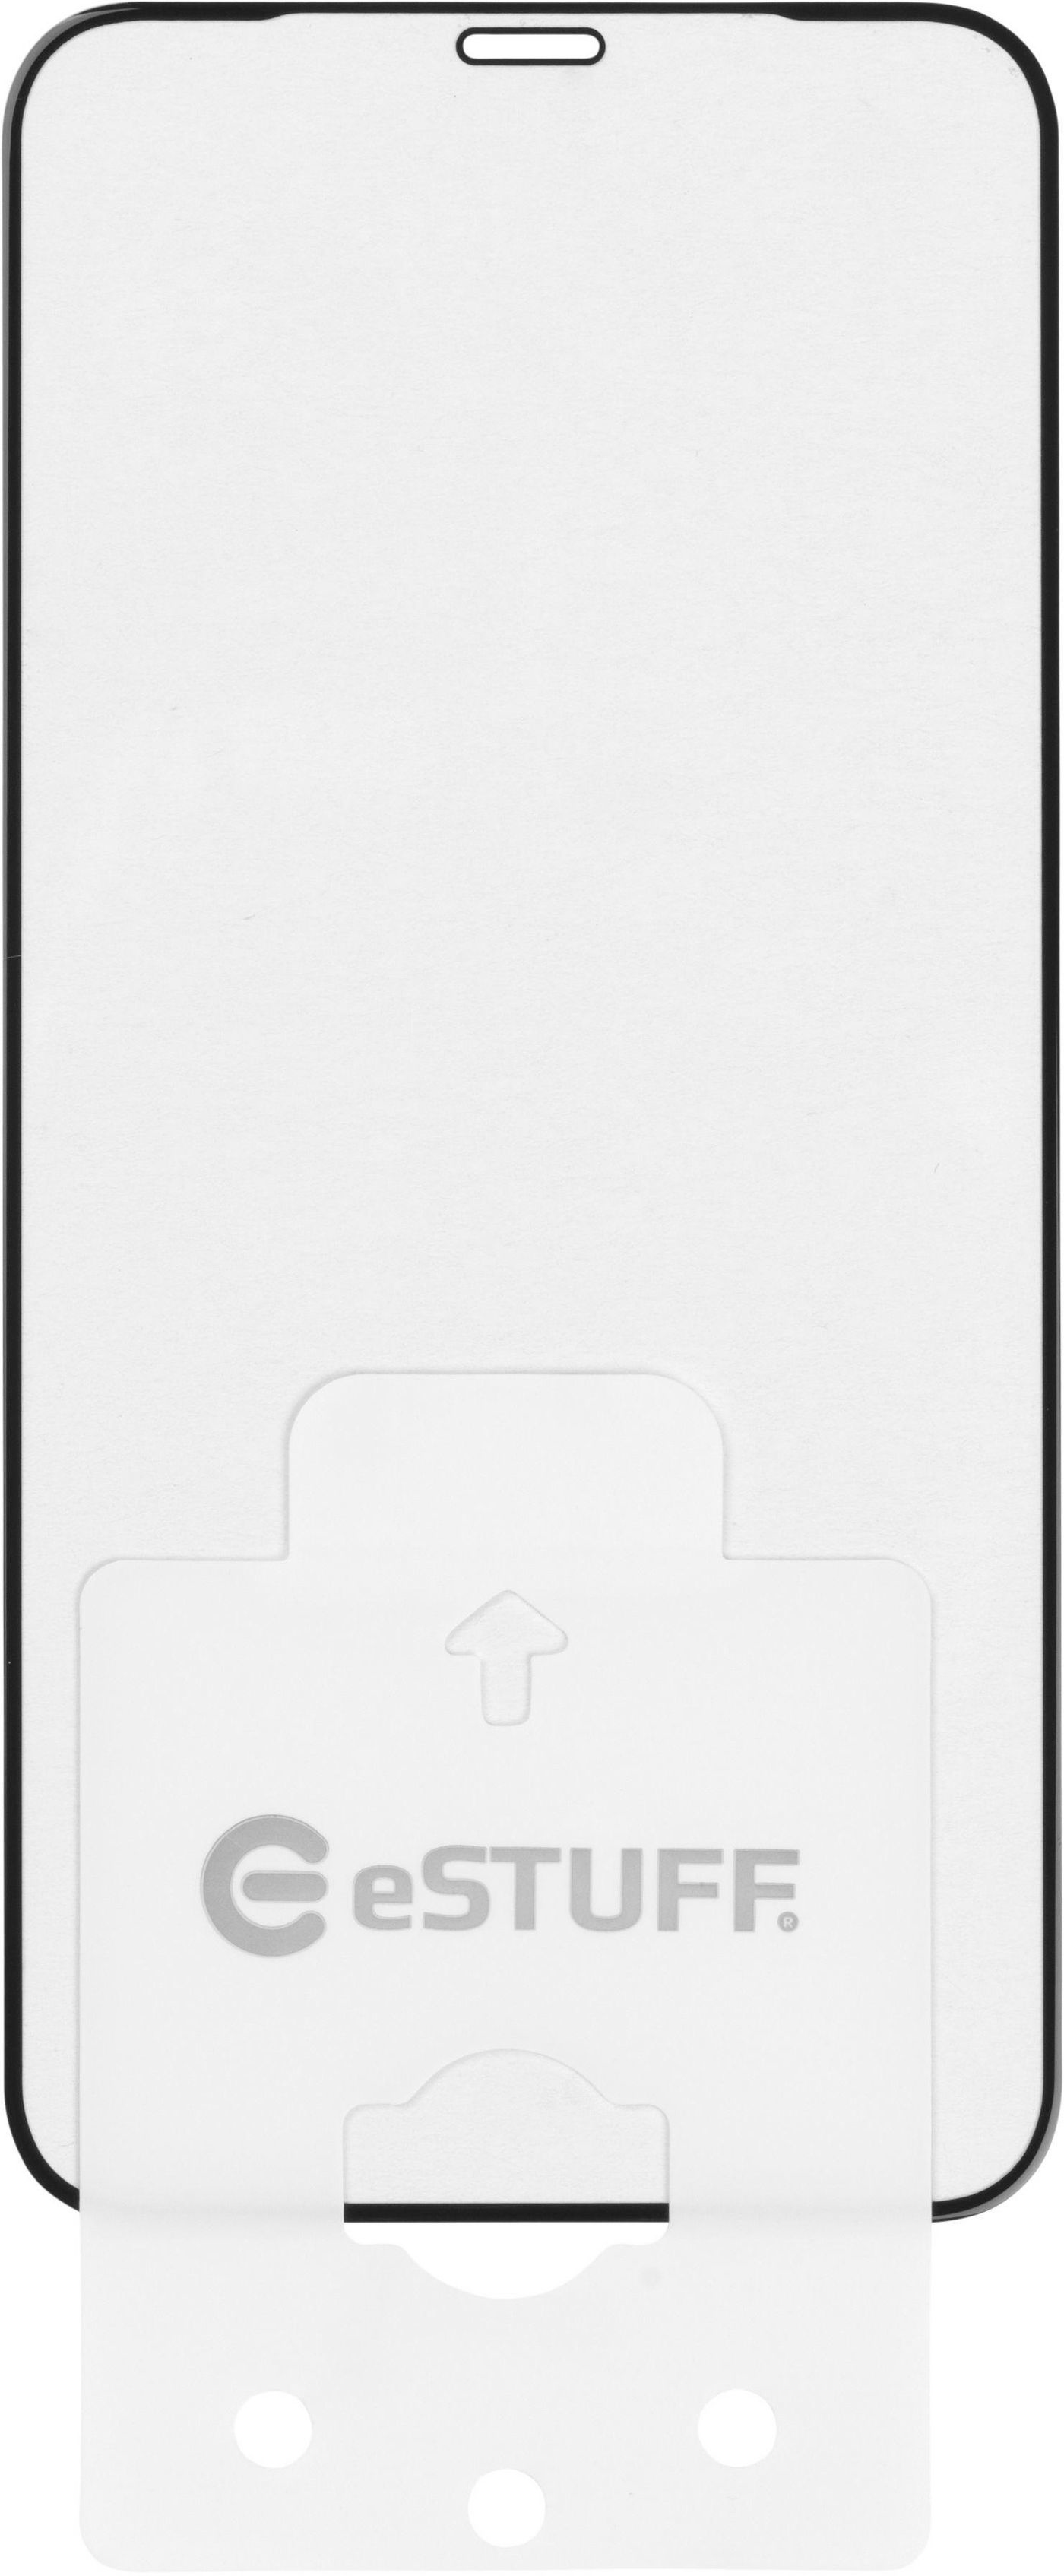 eSTUFF ES580133-10BULK skärm- och baksidesskydd till mobiltelefon Genomskinligt skärmskydd Apple 10 styck